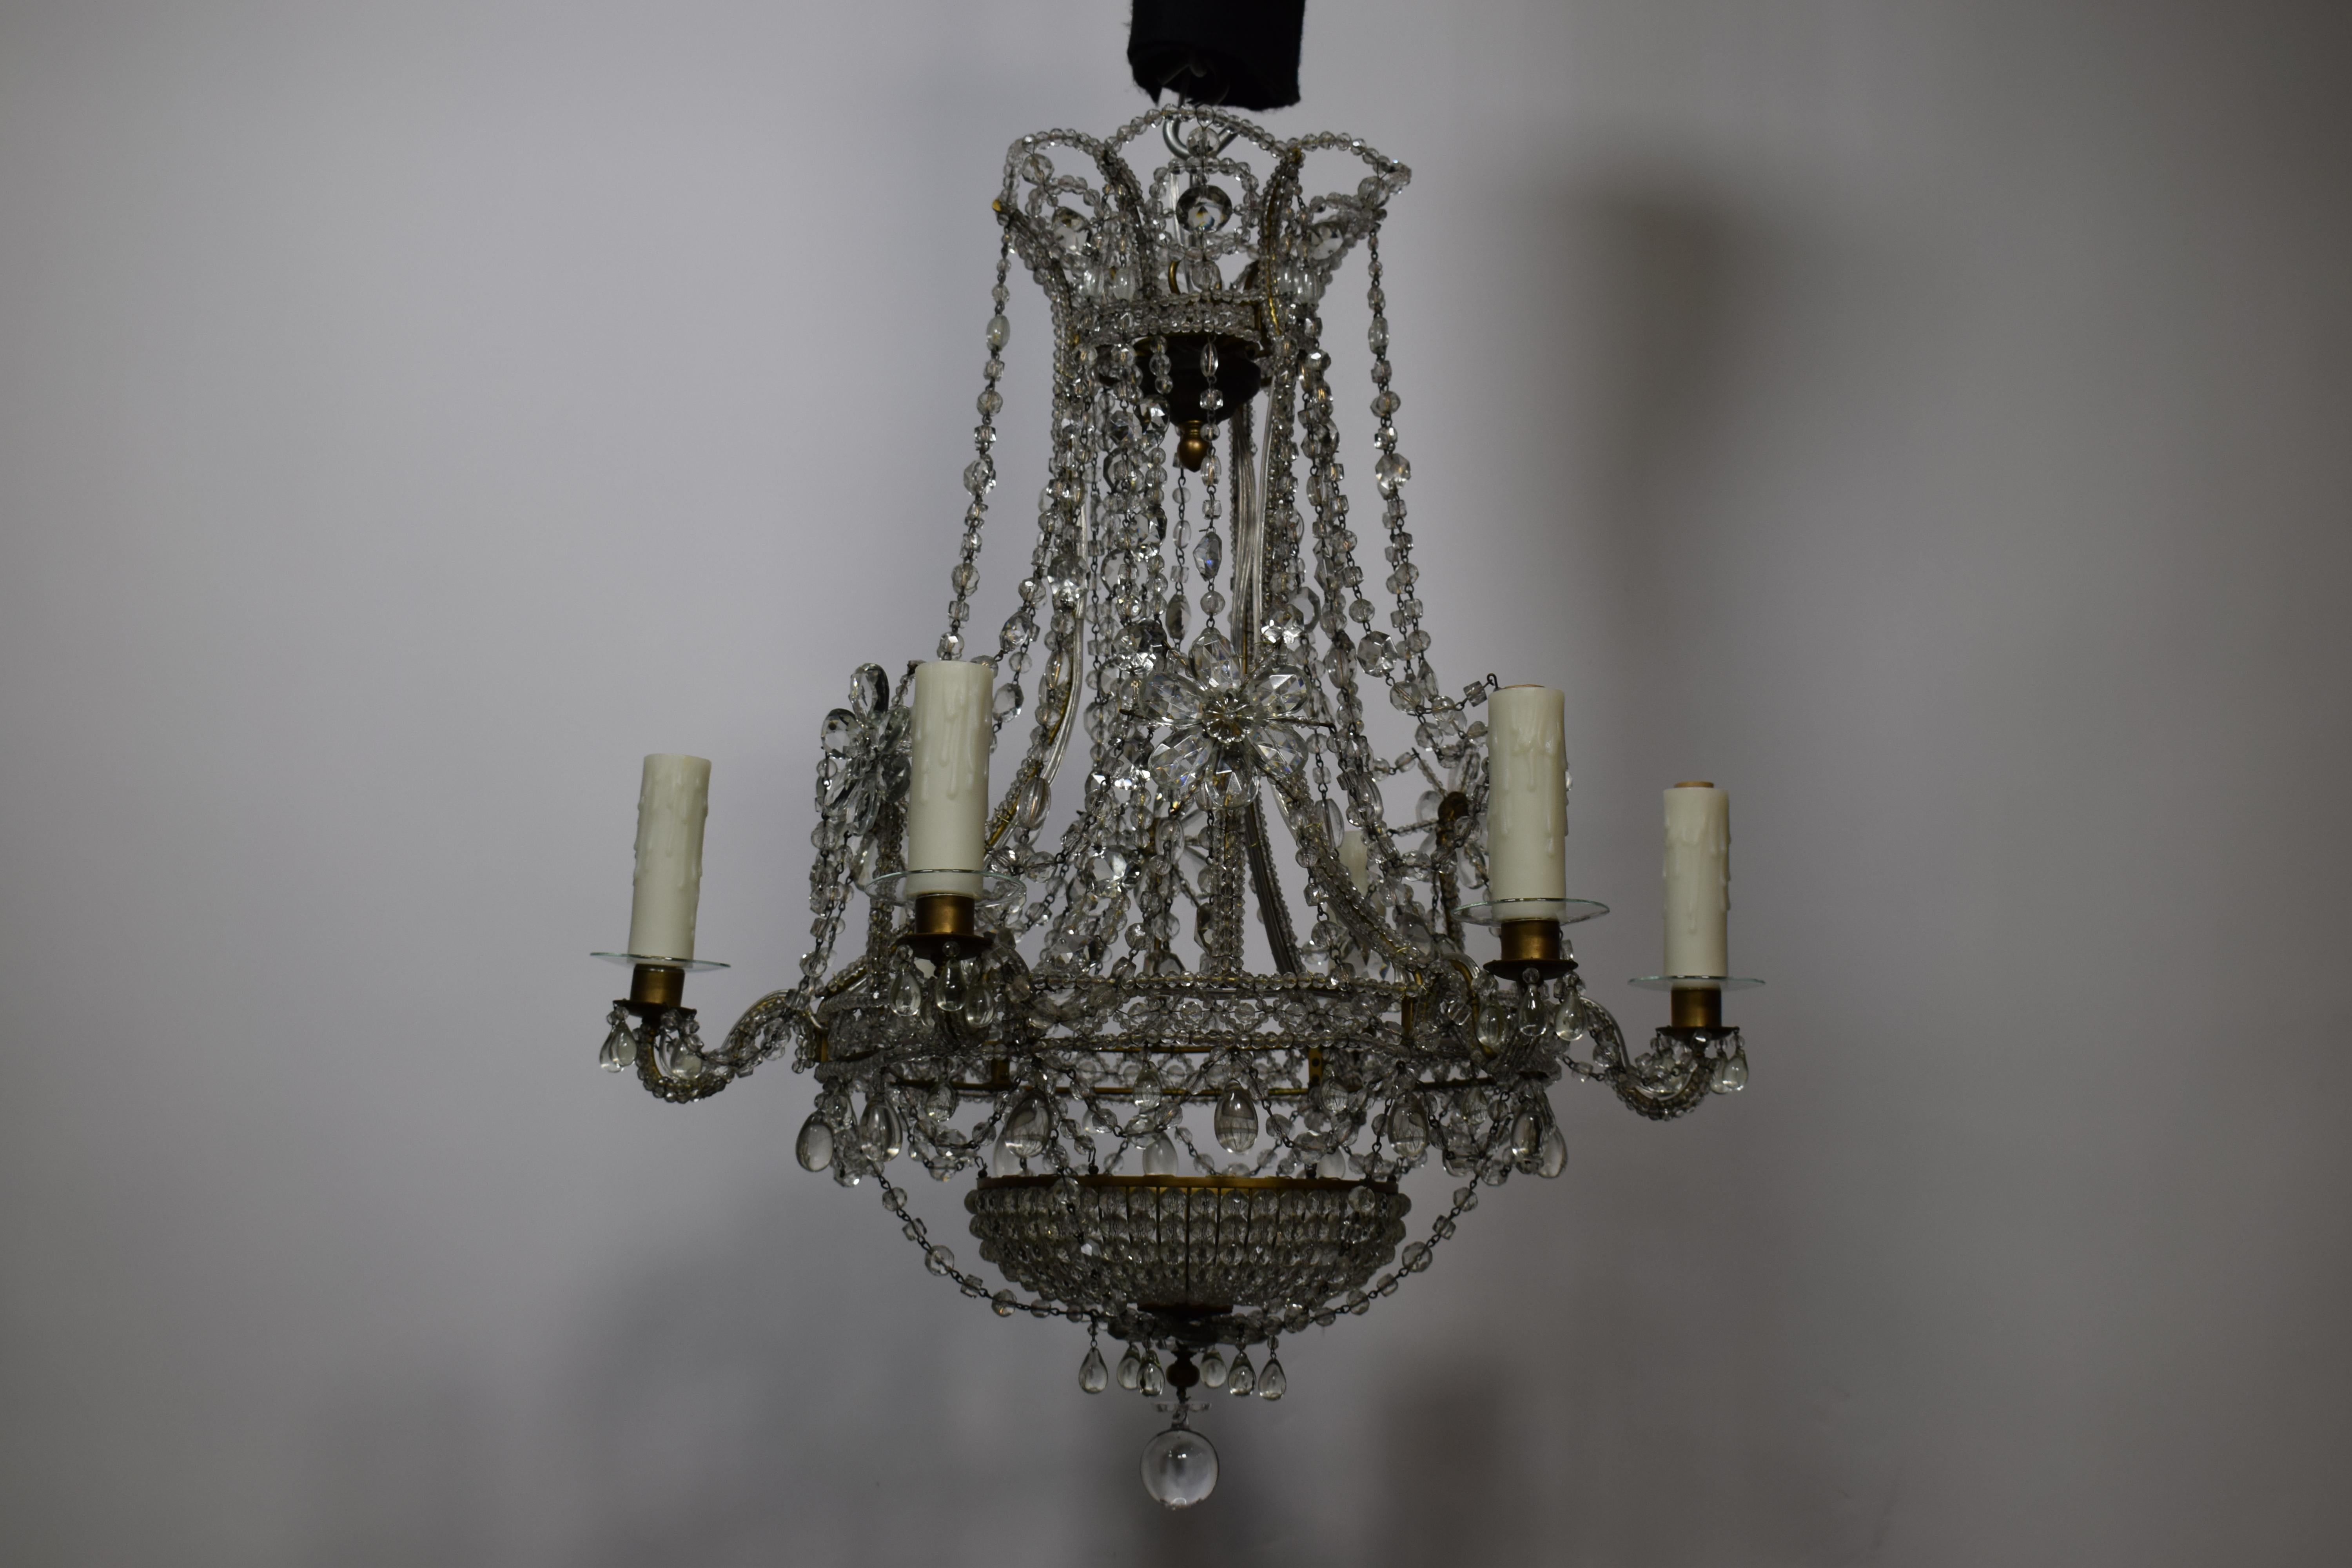 Un lustre en cristal baltique très fin et décoratif. Travail d'épinglage en cristal exquis.
Suède, vers 1900. 6 lumières
Dimensions : hauteur 27 x diamètre 24.
CW4660.